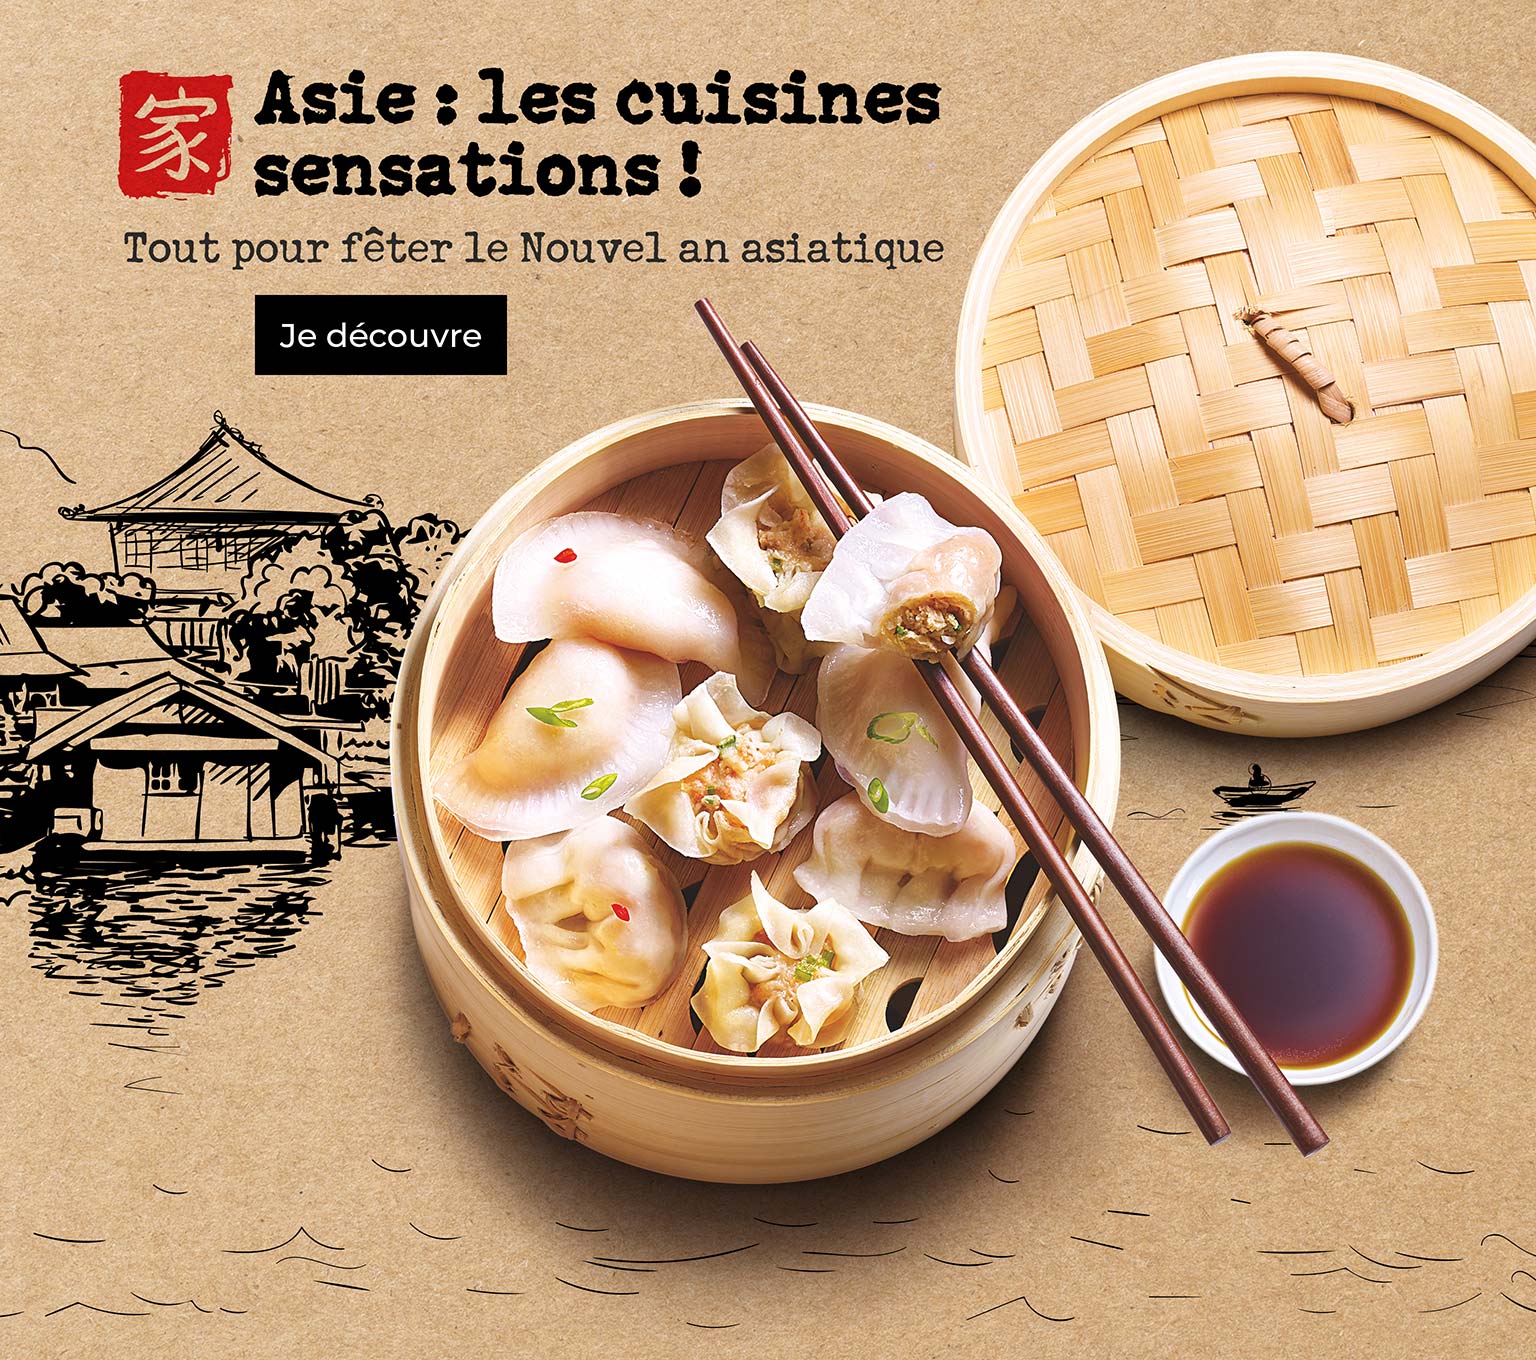 Asie : les cuisines sensations pour fêter le nouvel an asiatique avec la Maison Thiriet !